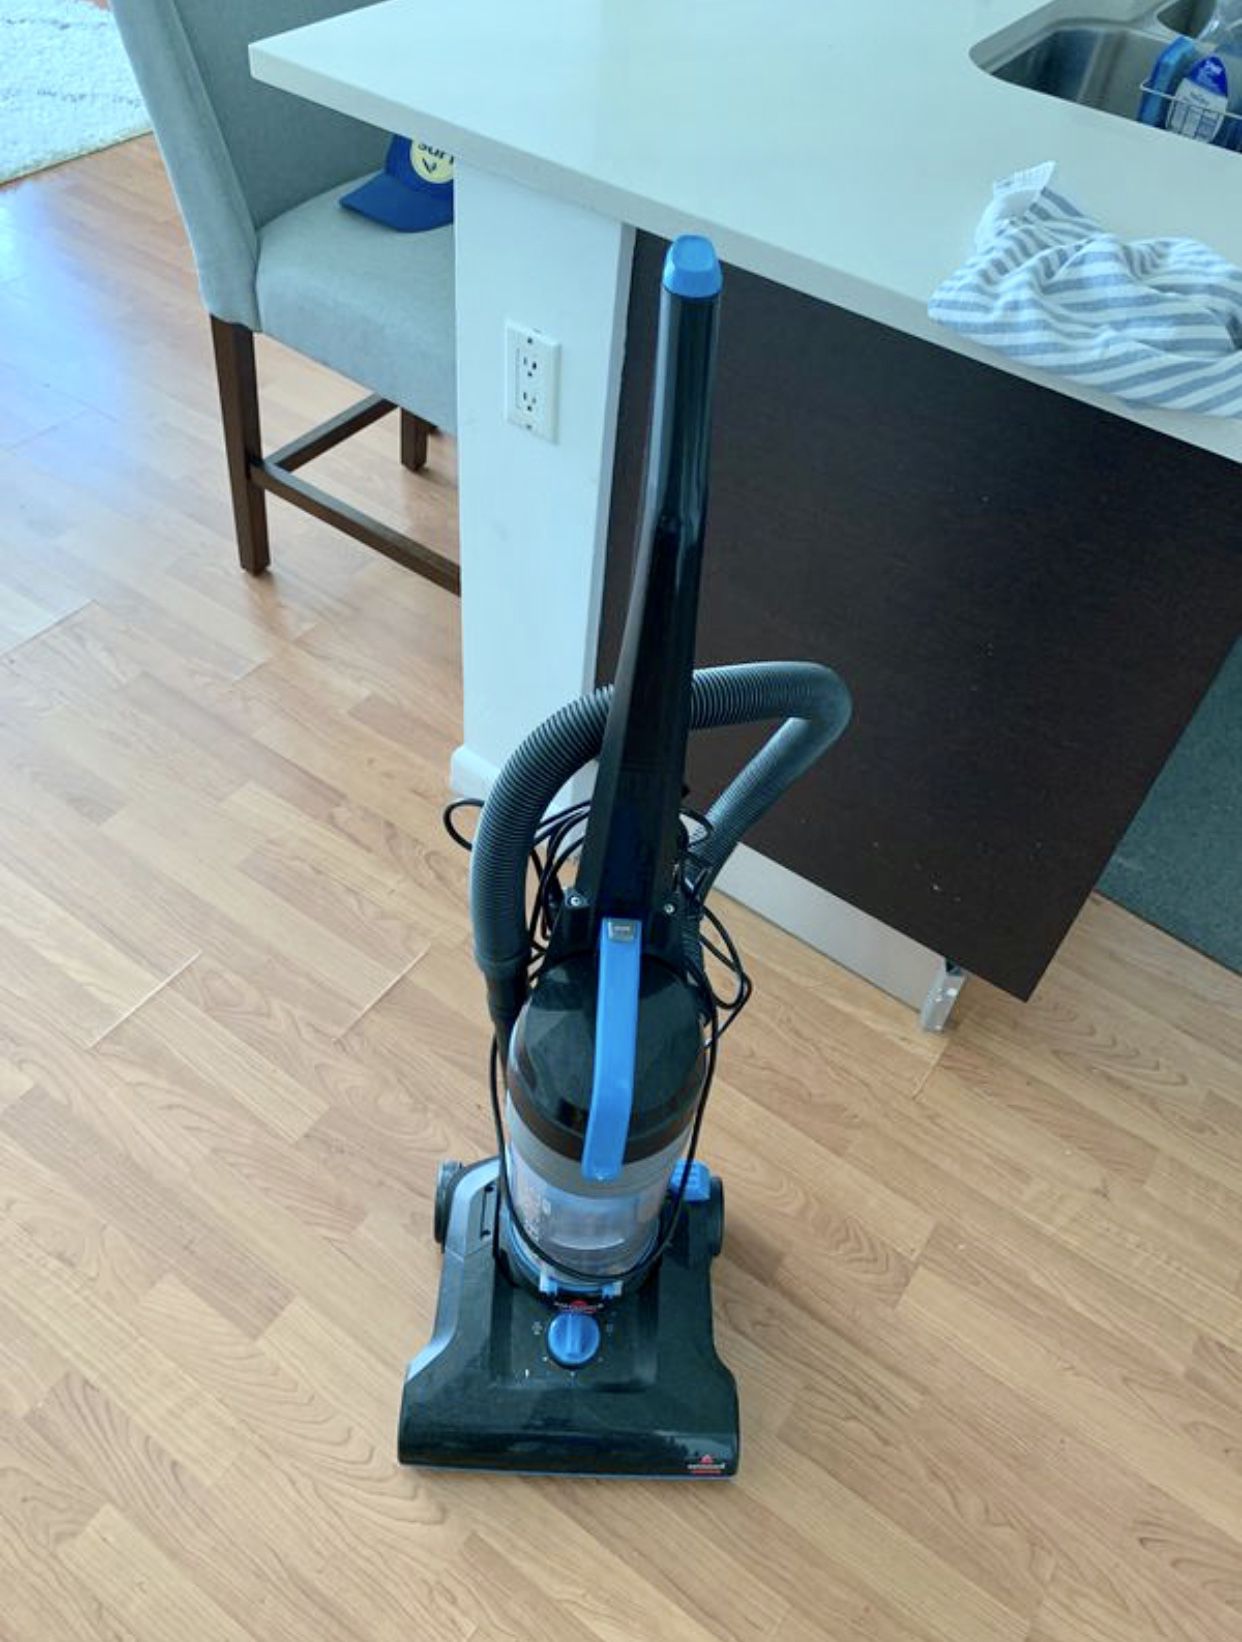 Good condition vacuum cleaner